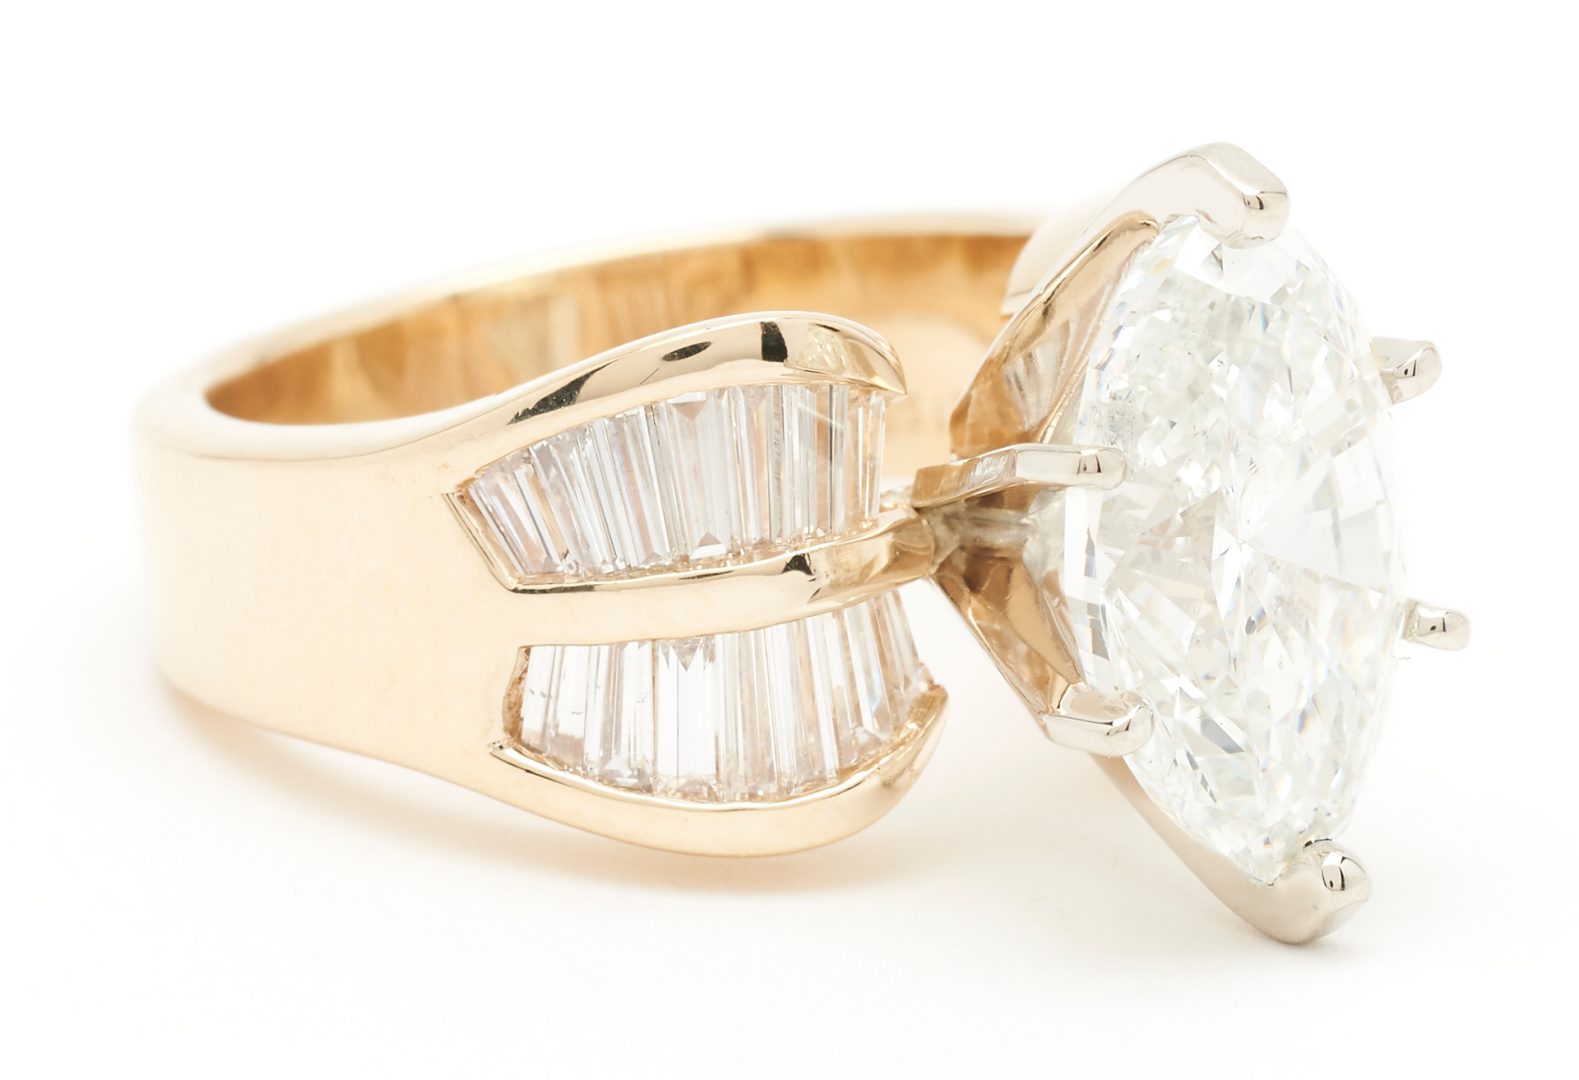 Lot 21: 4.00 Carat Marquise Brilliant Cut Diamond Ring, GIA Report